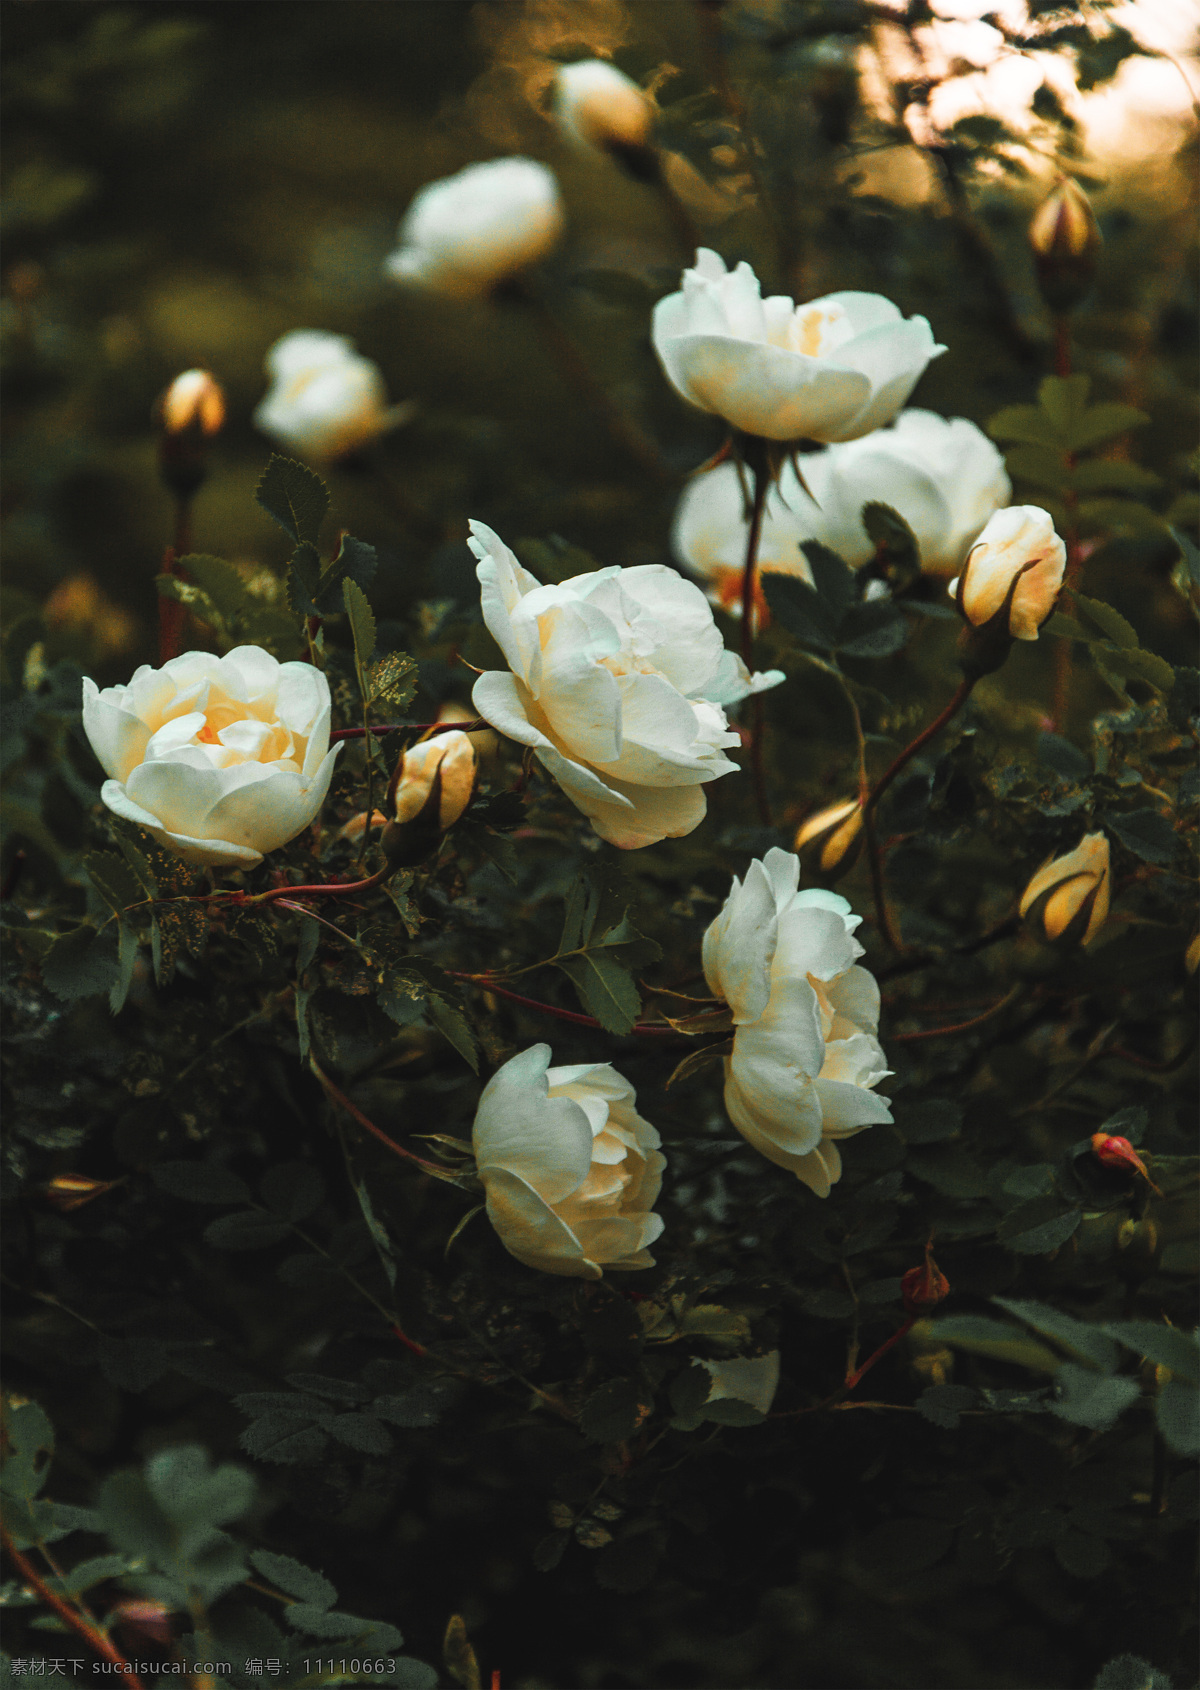 绿色植物 植物 花朵 白色花朵 白色 花枝 花瓣 白色花瓣 叶子 叶片 玫瑰 白玫瑰